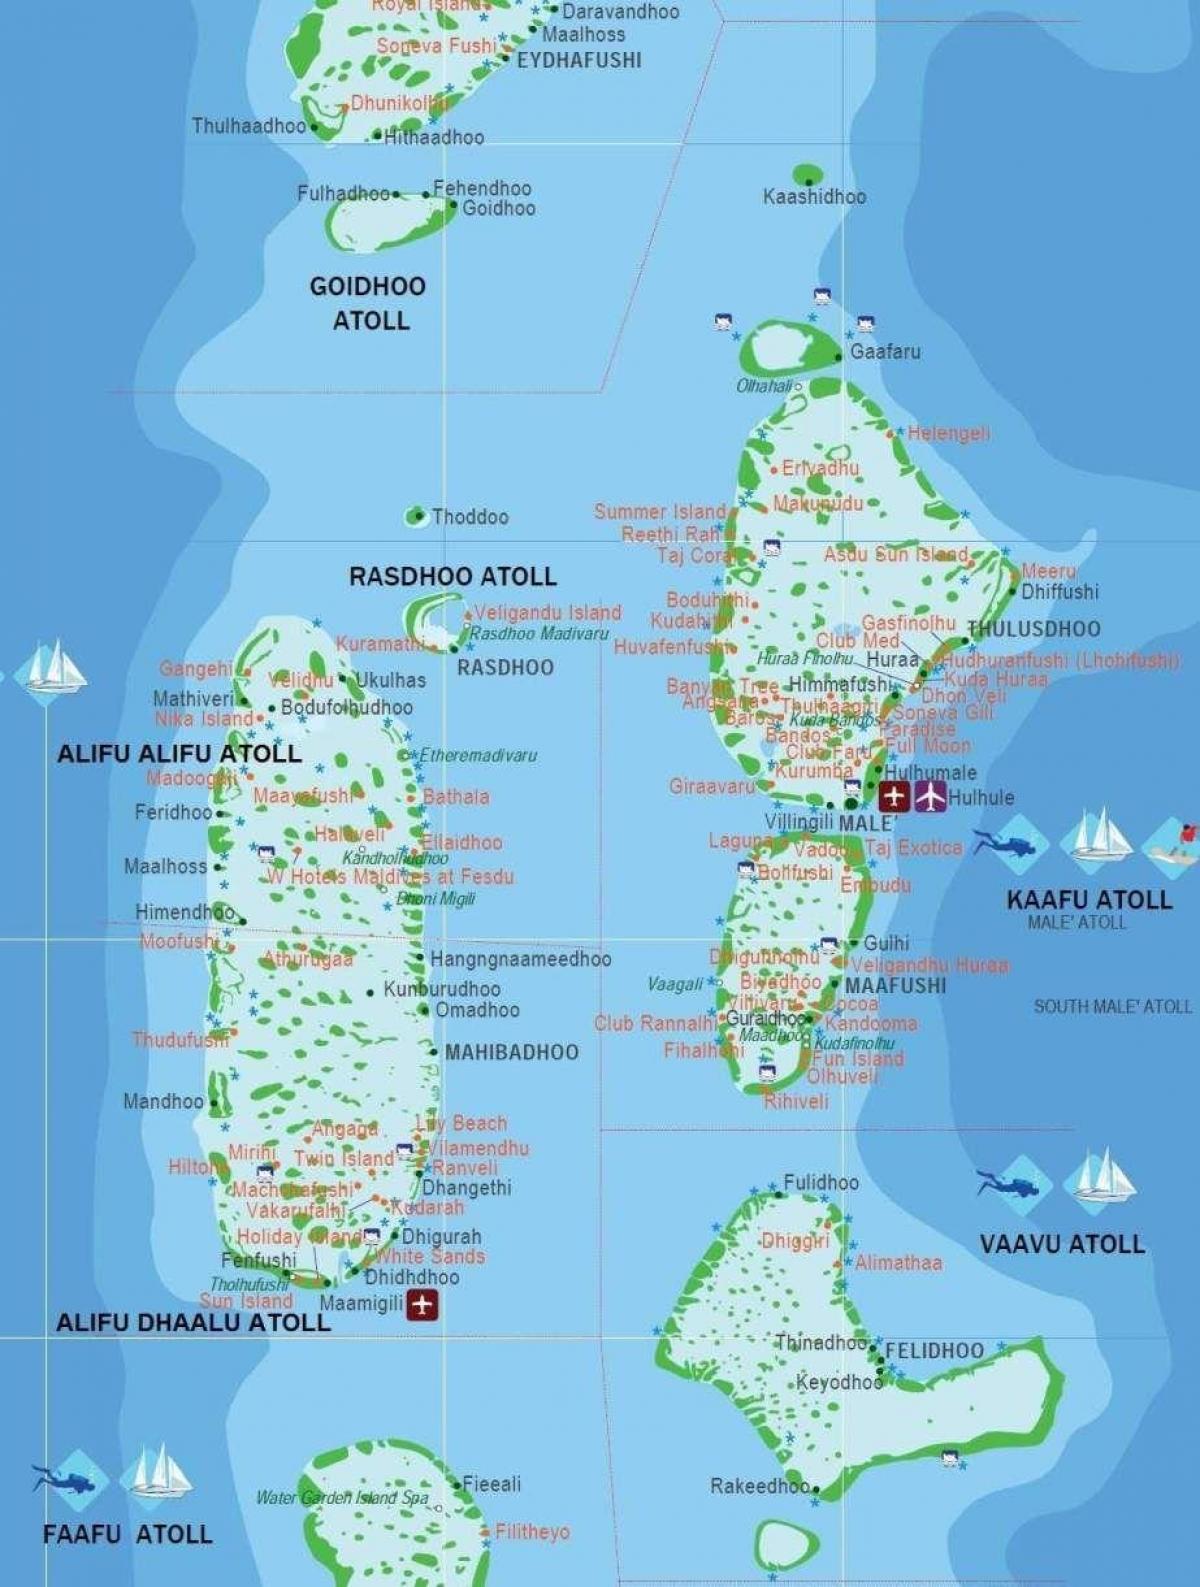 מפה של האיים המלדיביים תיירות